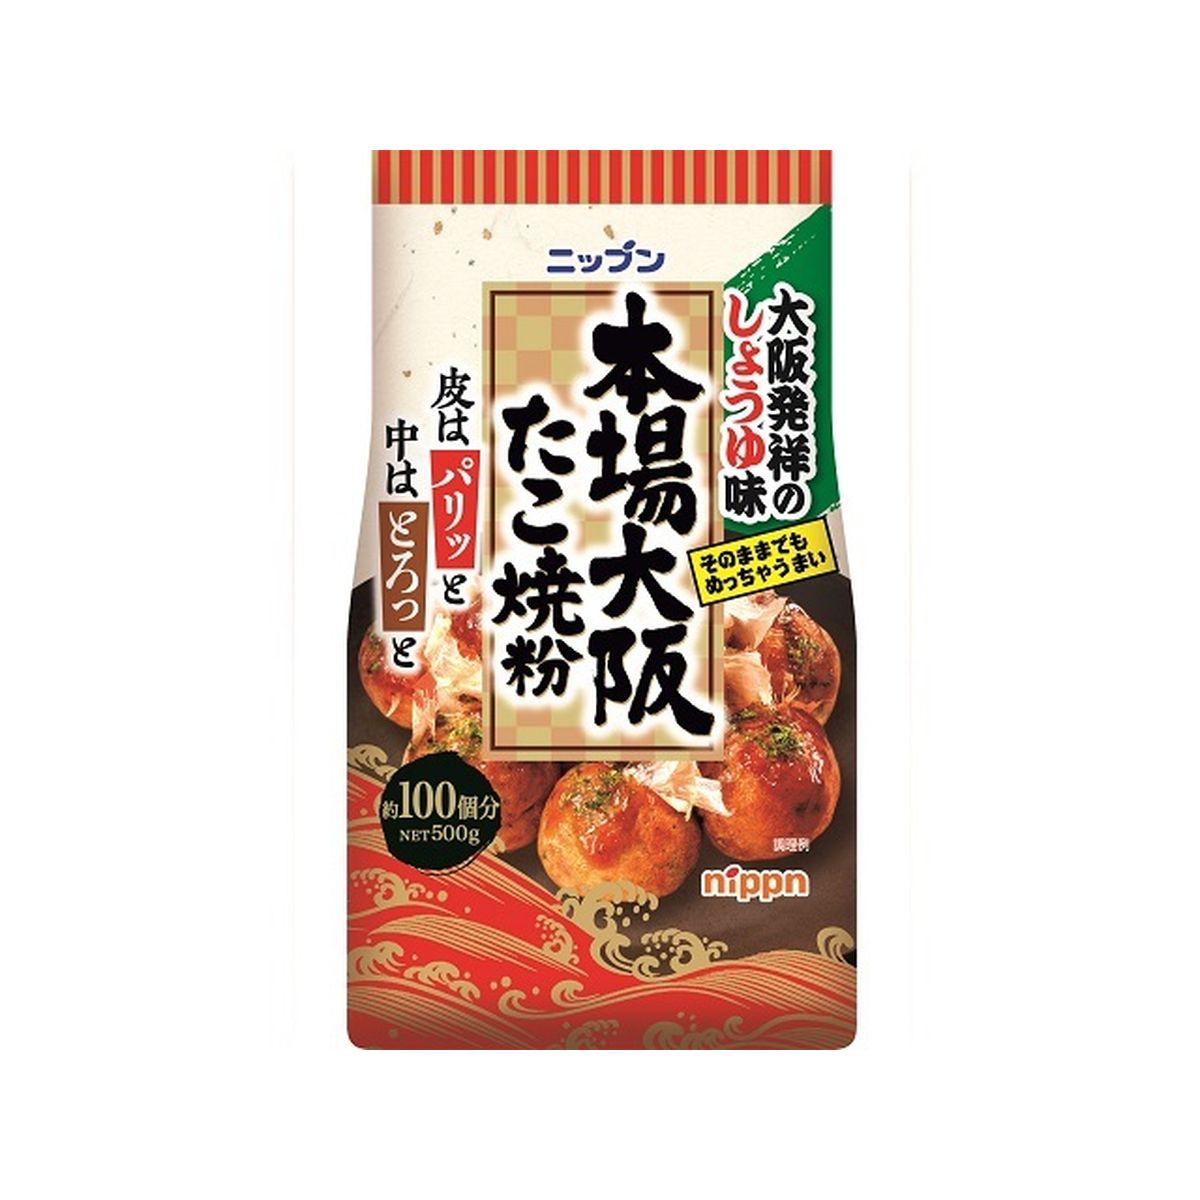 【33】【8個入り】日本製粉 本場大阪 たこ焼粉 しょうゆ味 500g